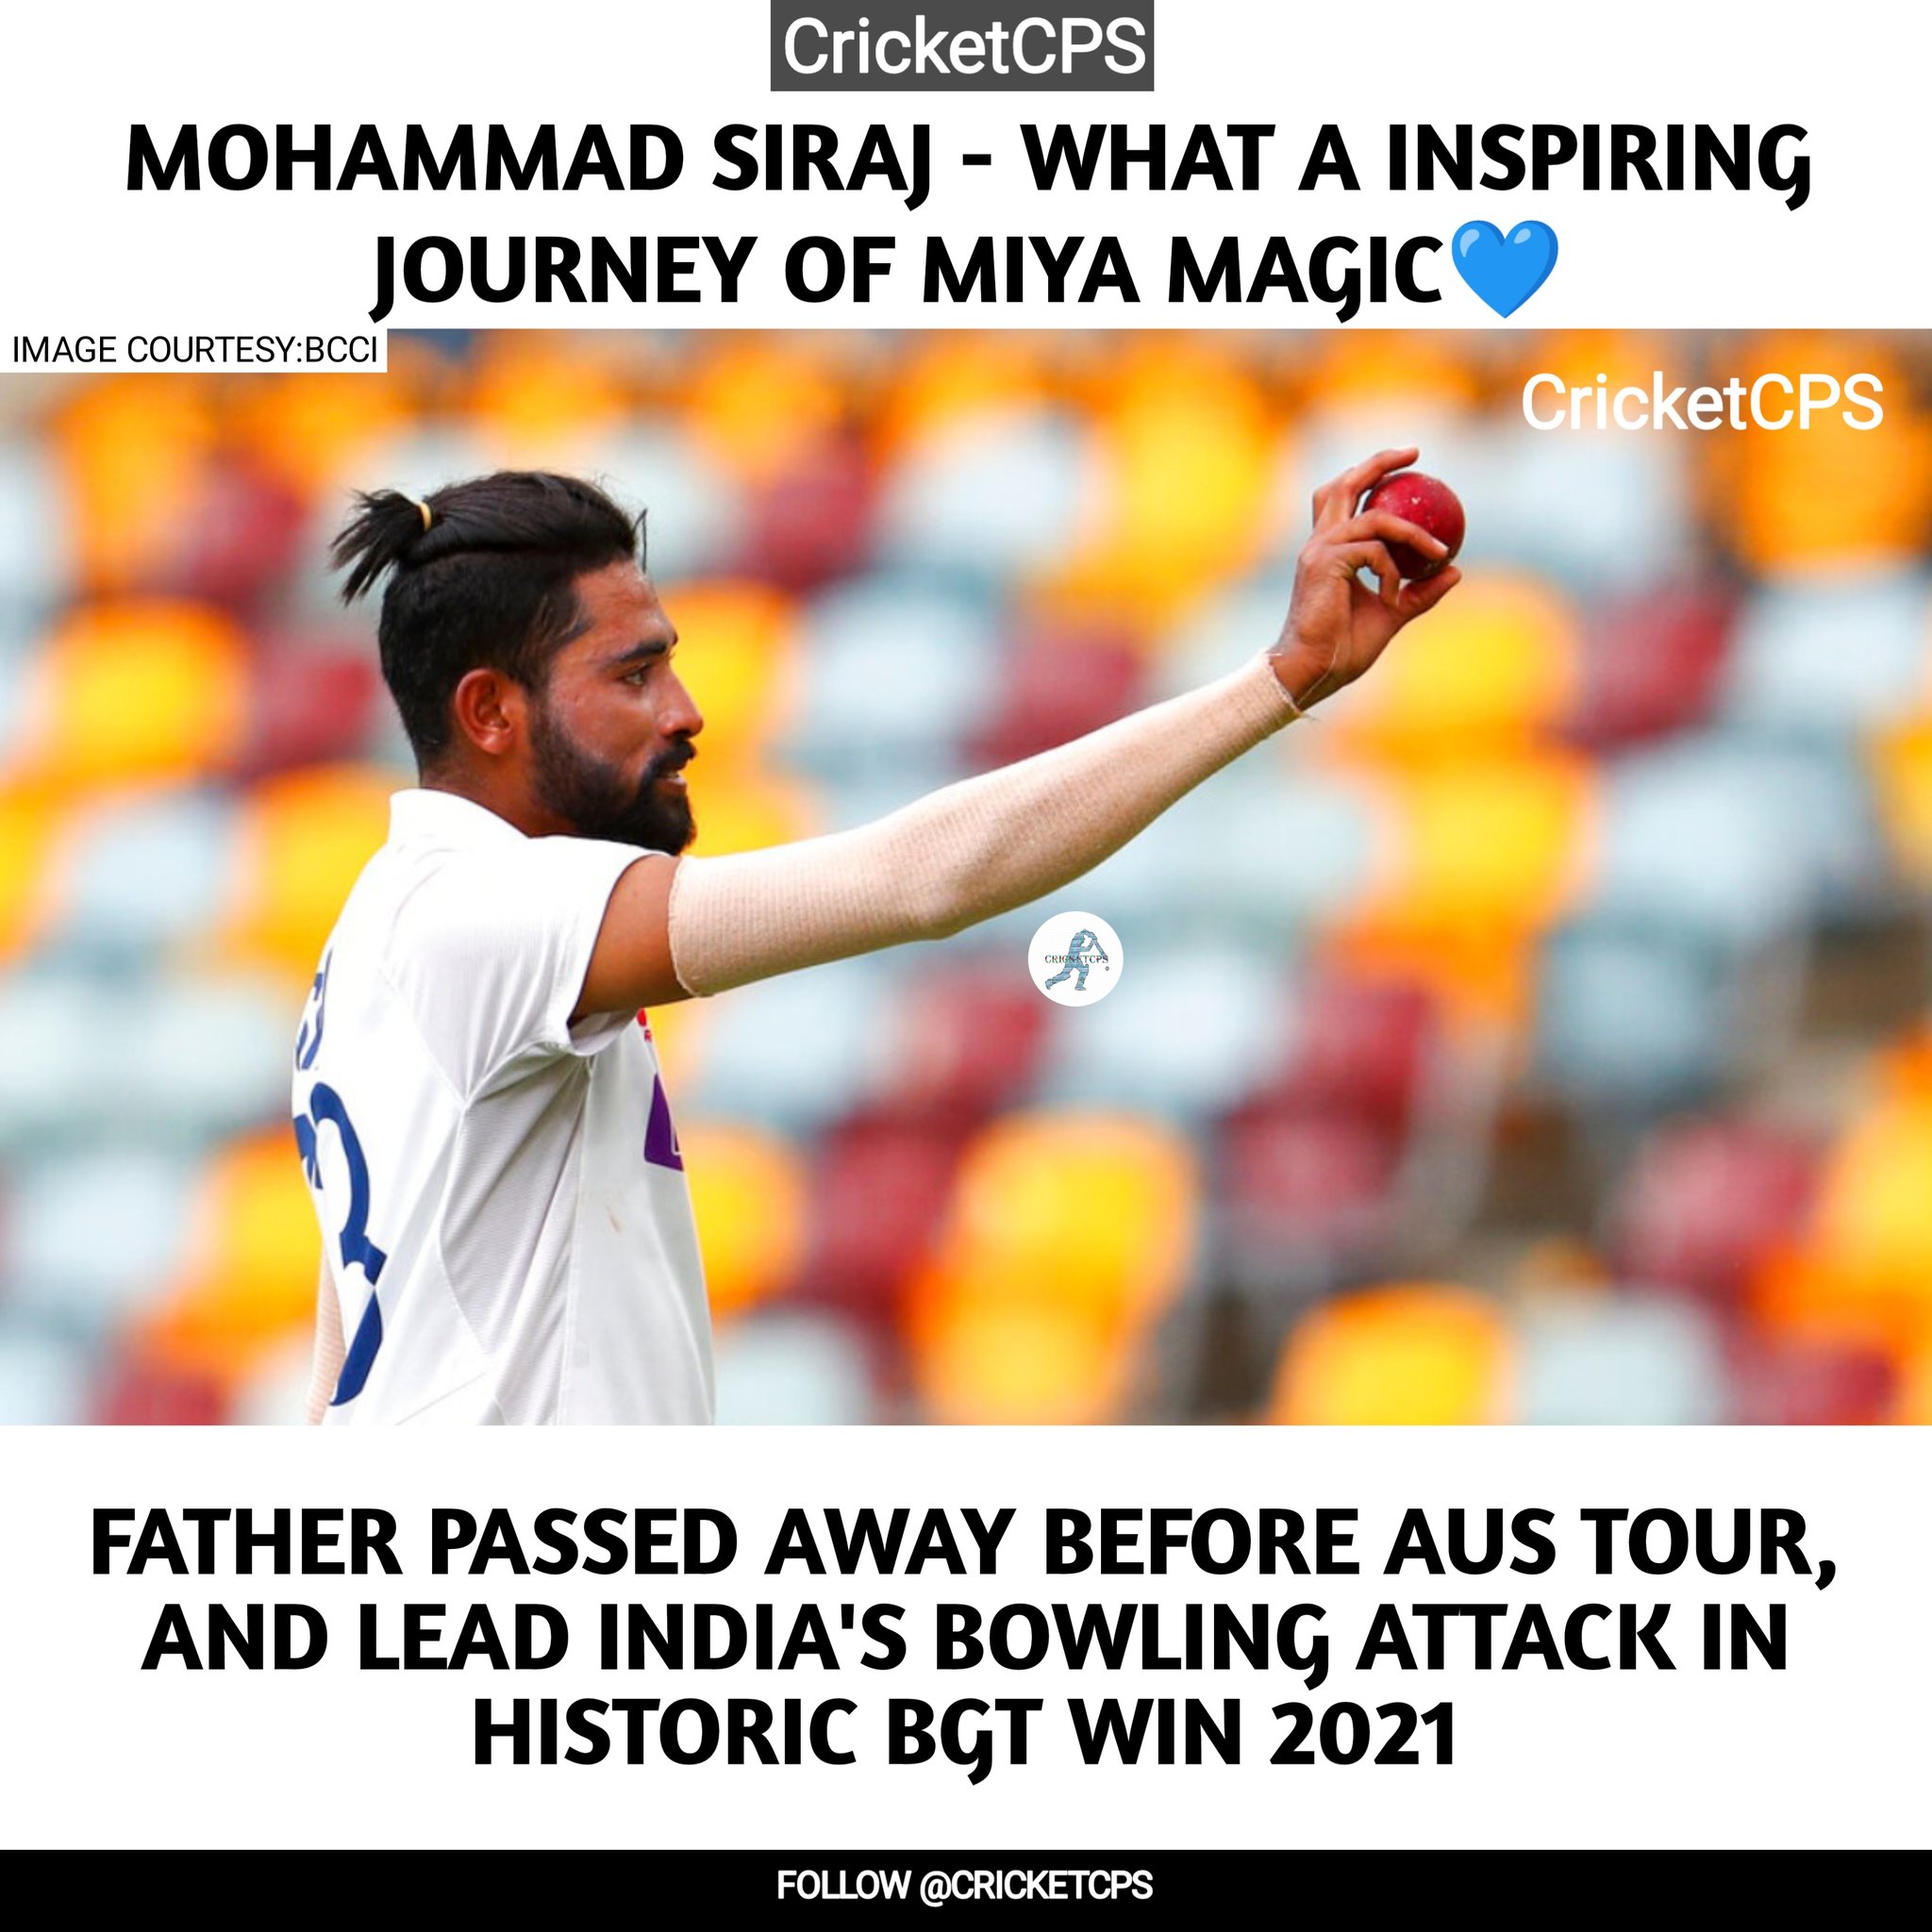 ऑस्ट्रेलिया दौरे पर पिता के निधन की ख़बर के बाद अक्सर रोता था: मोहम्मद सिराज